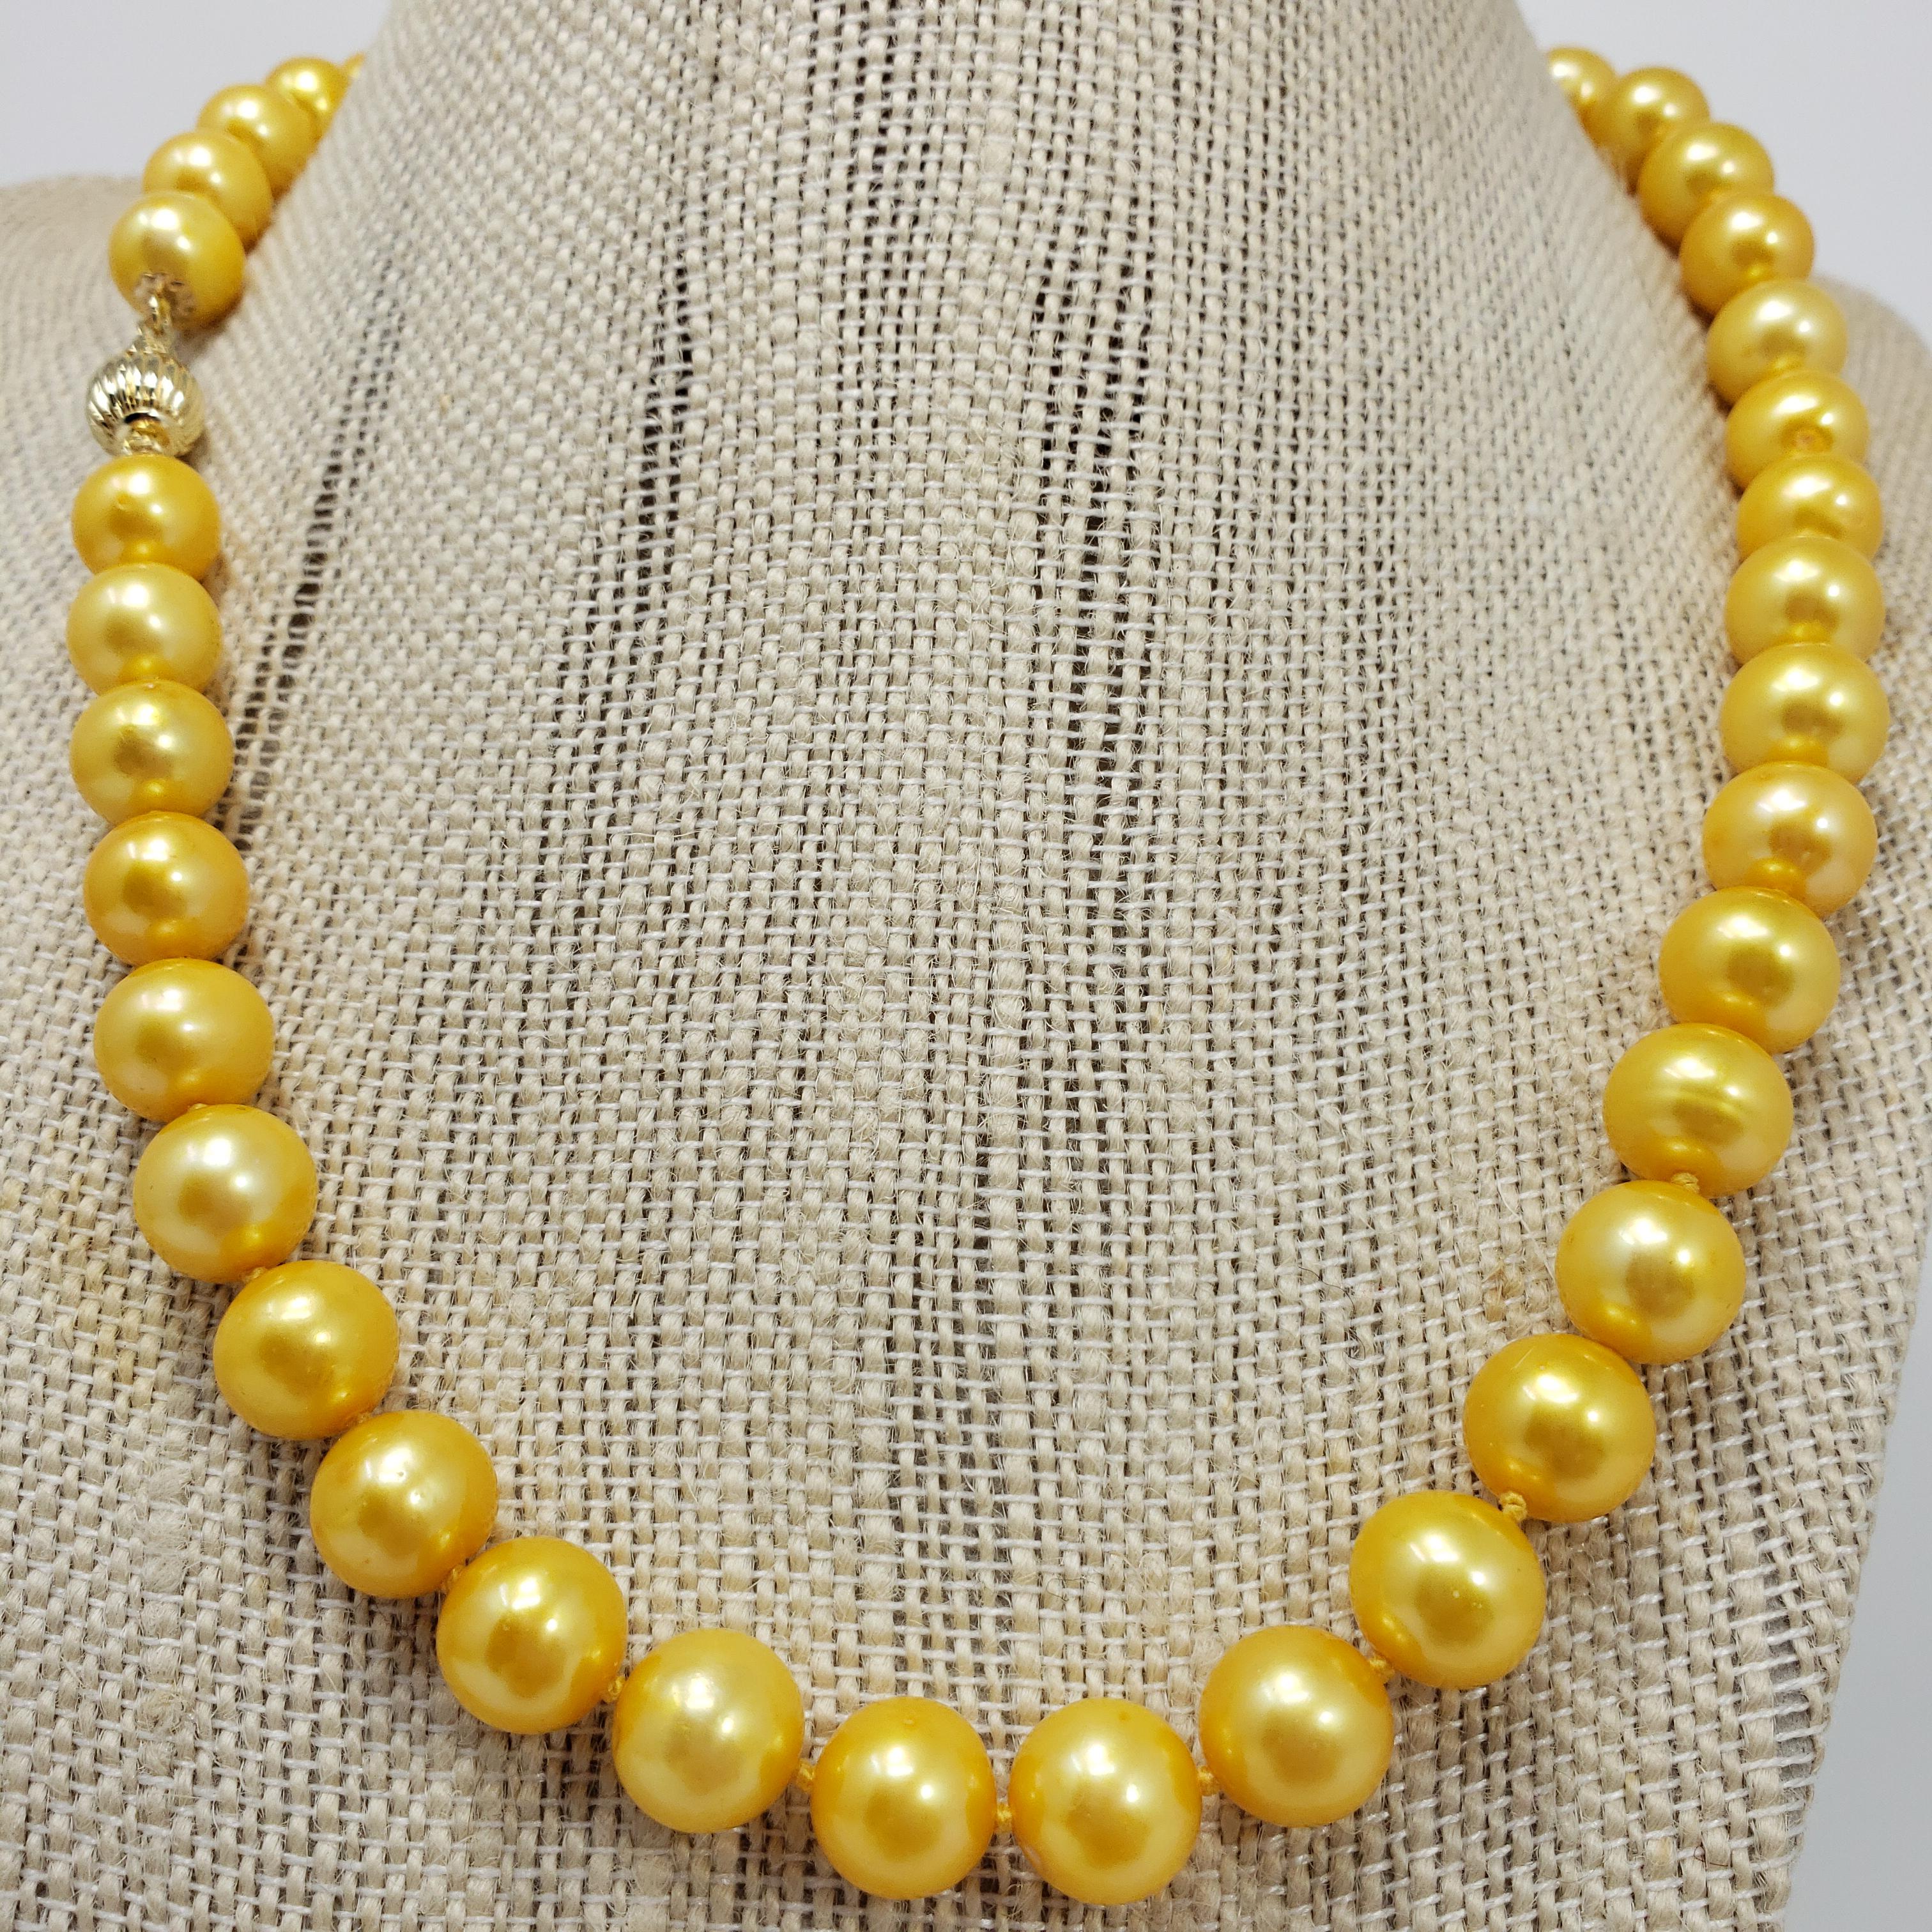 Un extravagant collier de perles des mers du Sud, comprenant un rang de perles brillantes sur un collier jaune noué. Accentué par un somptueux fermoir en or jaune 14K. Exquis !

Poinçons : 14K
Longueur 48cm
Les perles varient de 9,6 mm à 10 mm